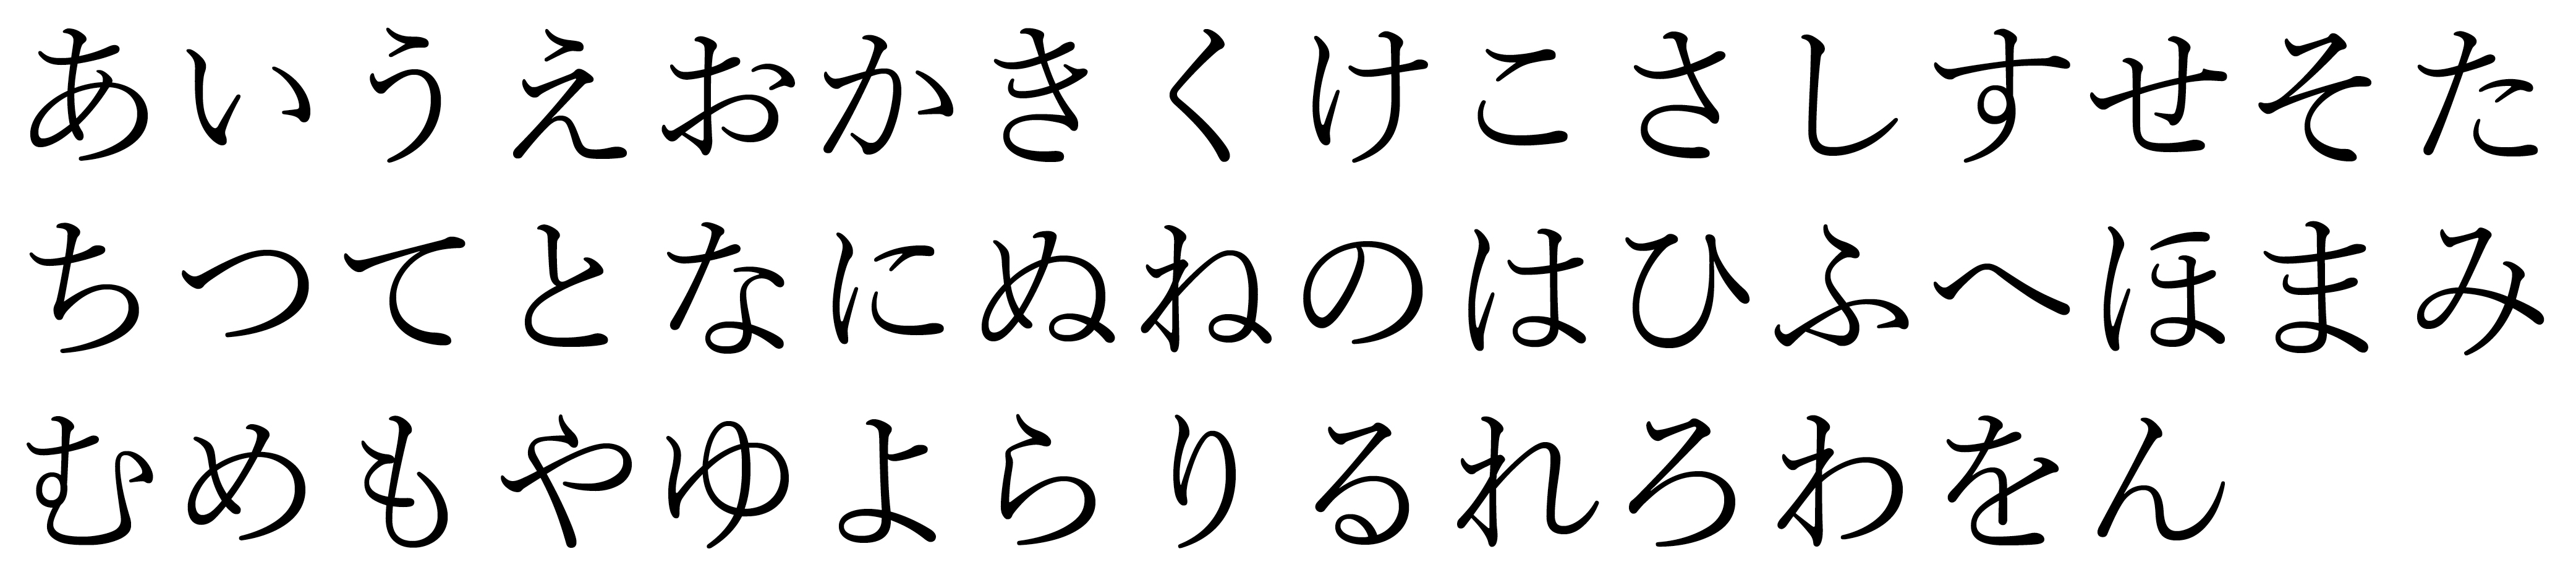 46 Basic Hiragana characters